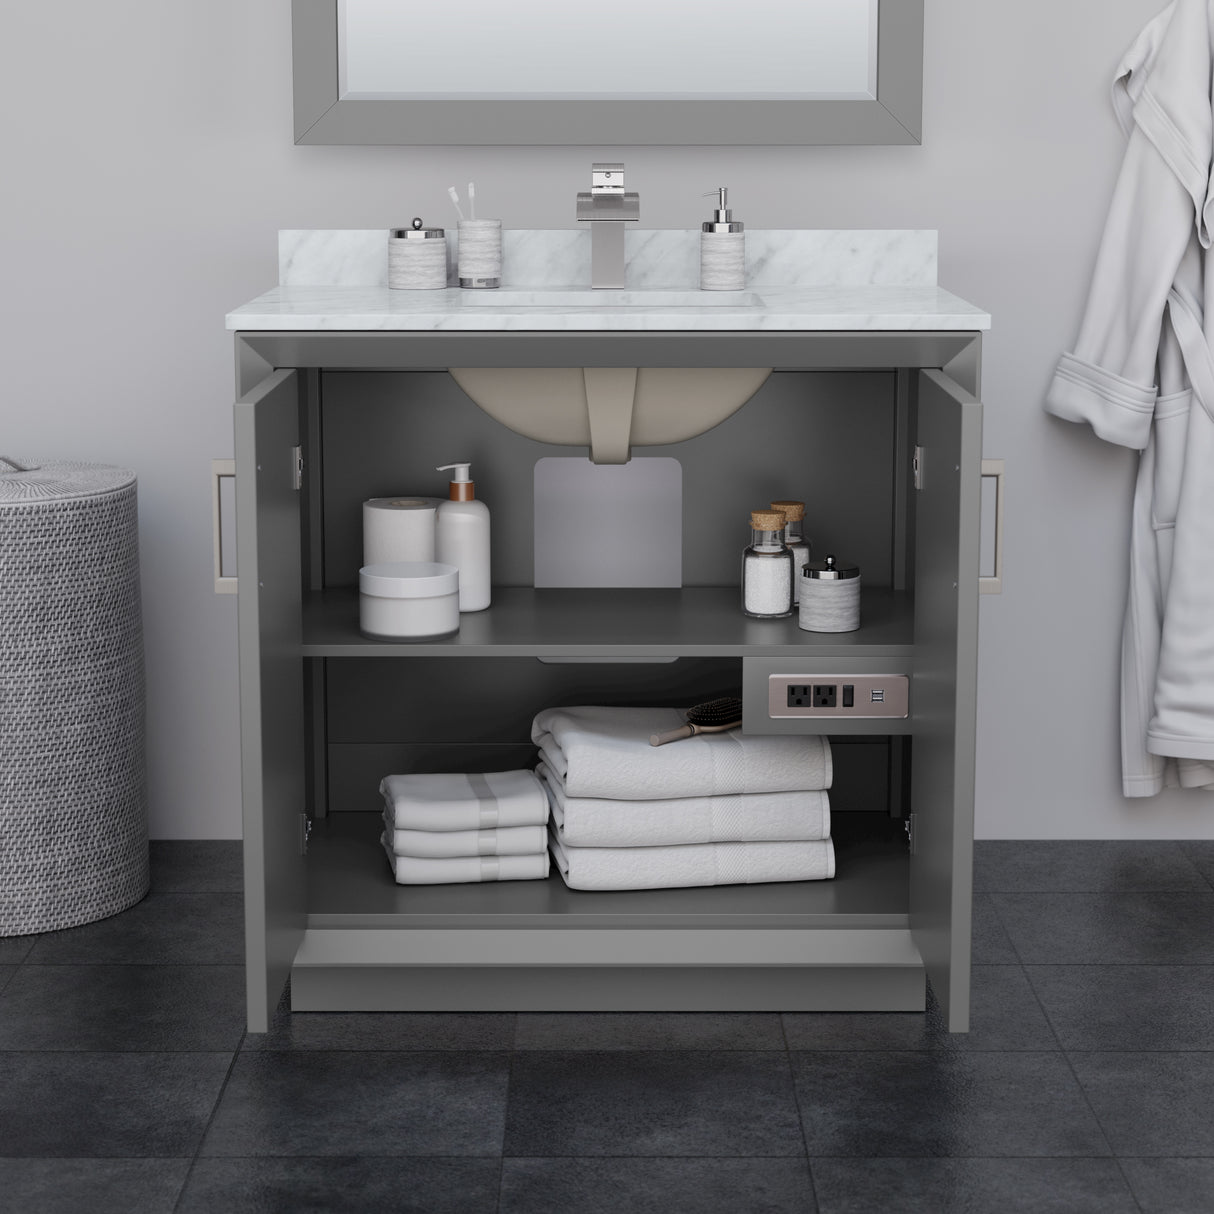 Strada 36 Inch Single Bathroom Vanity in Dark Gray No Countertop No Sink Satin Bronze Trim 34 Inch Mirror